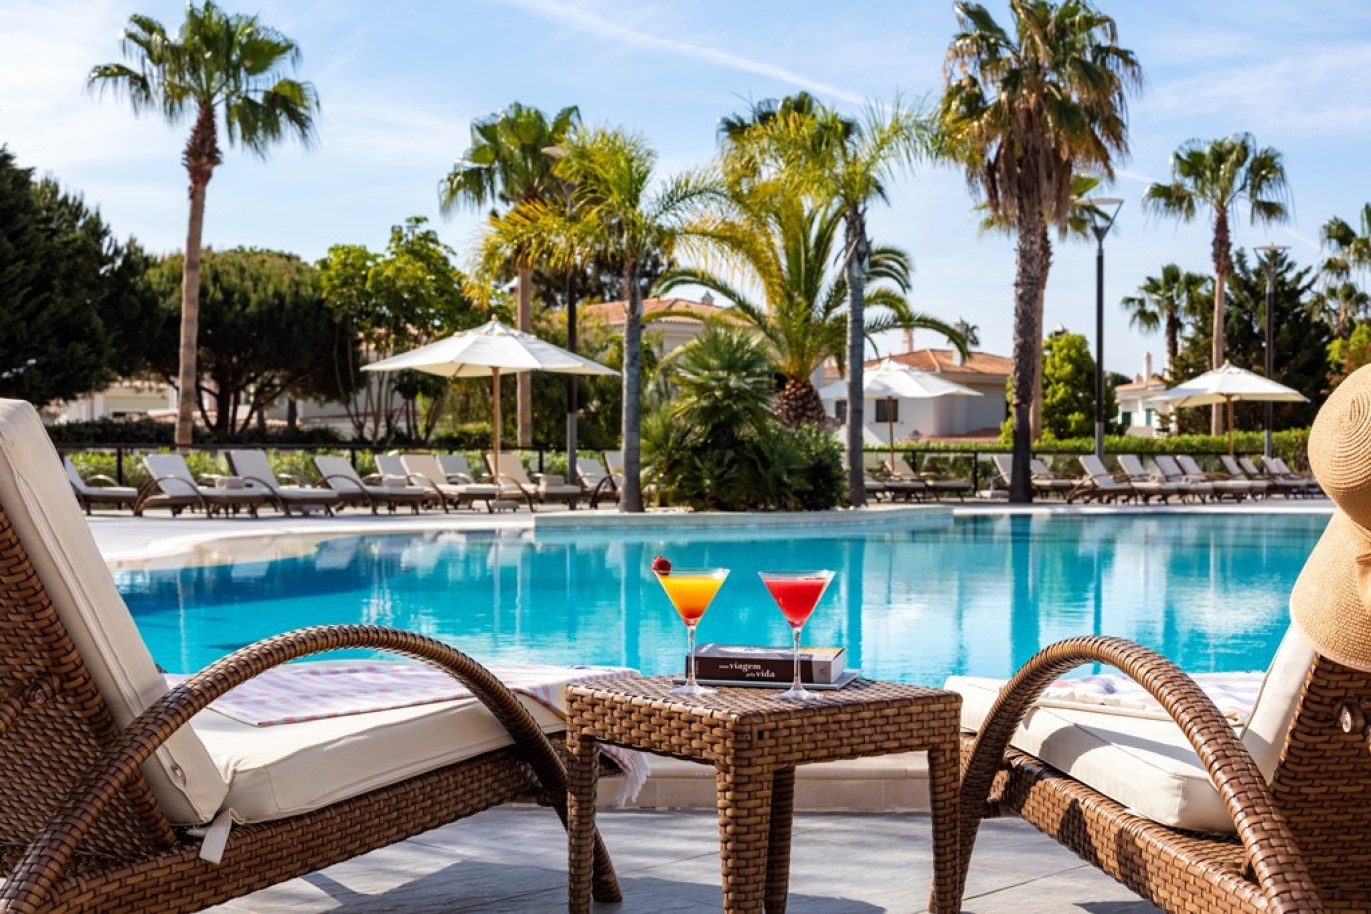 Apartamento, 2 quartos, piscina, para venda na Quinta do Lago, Algarve_262565